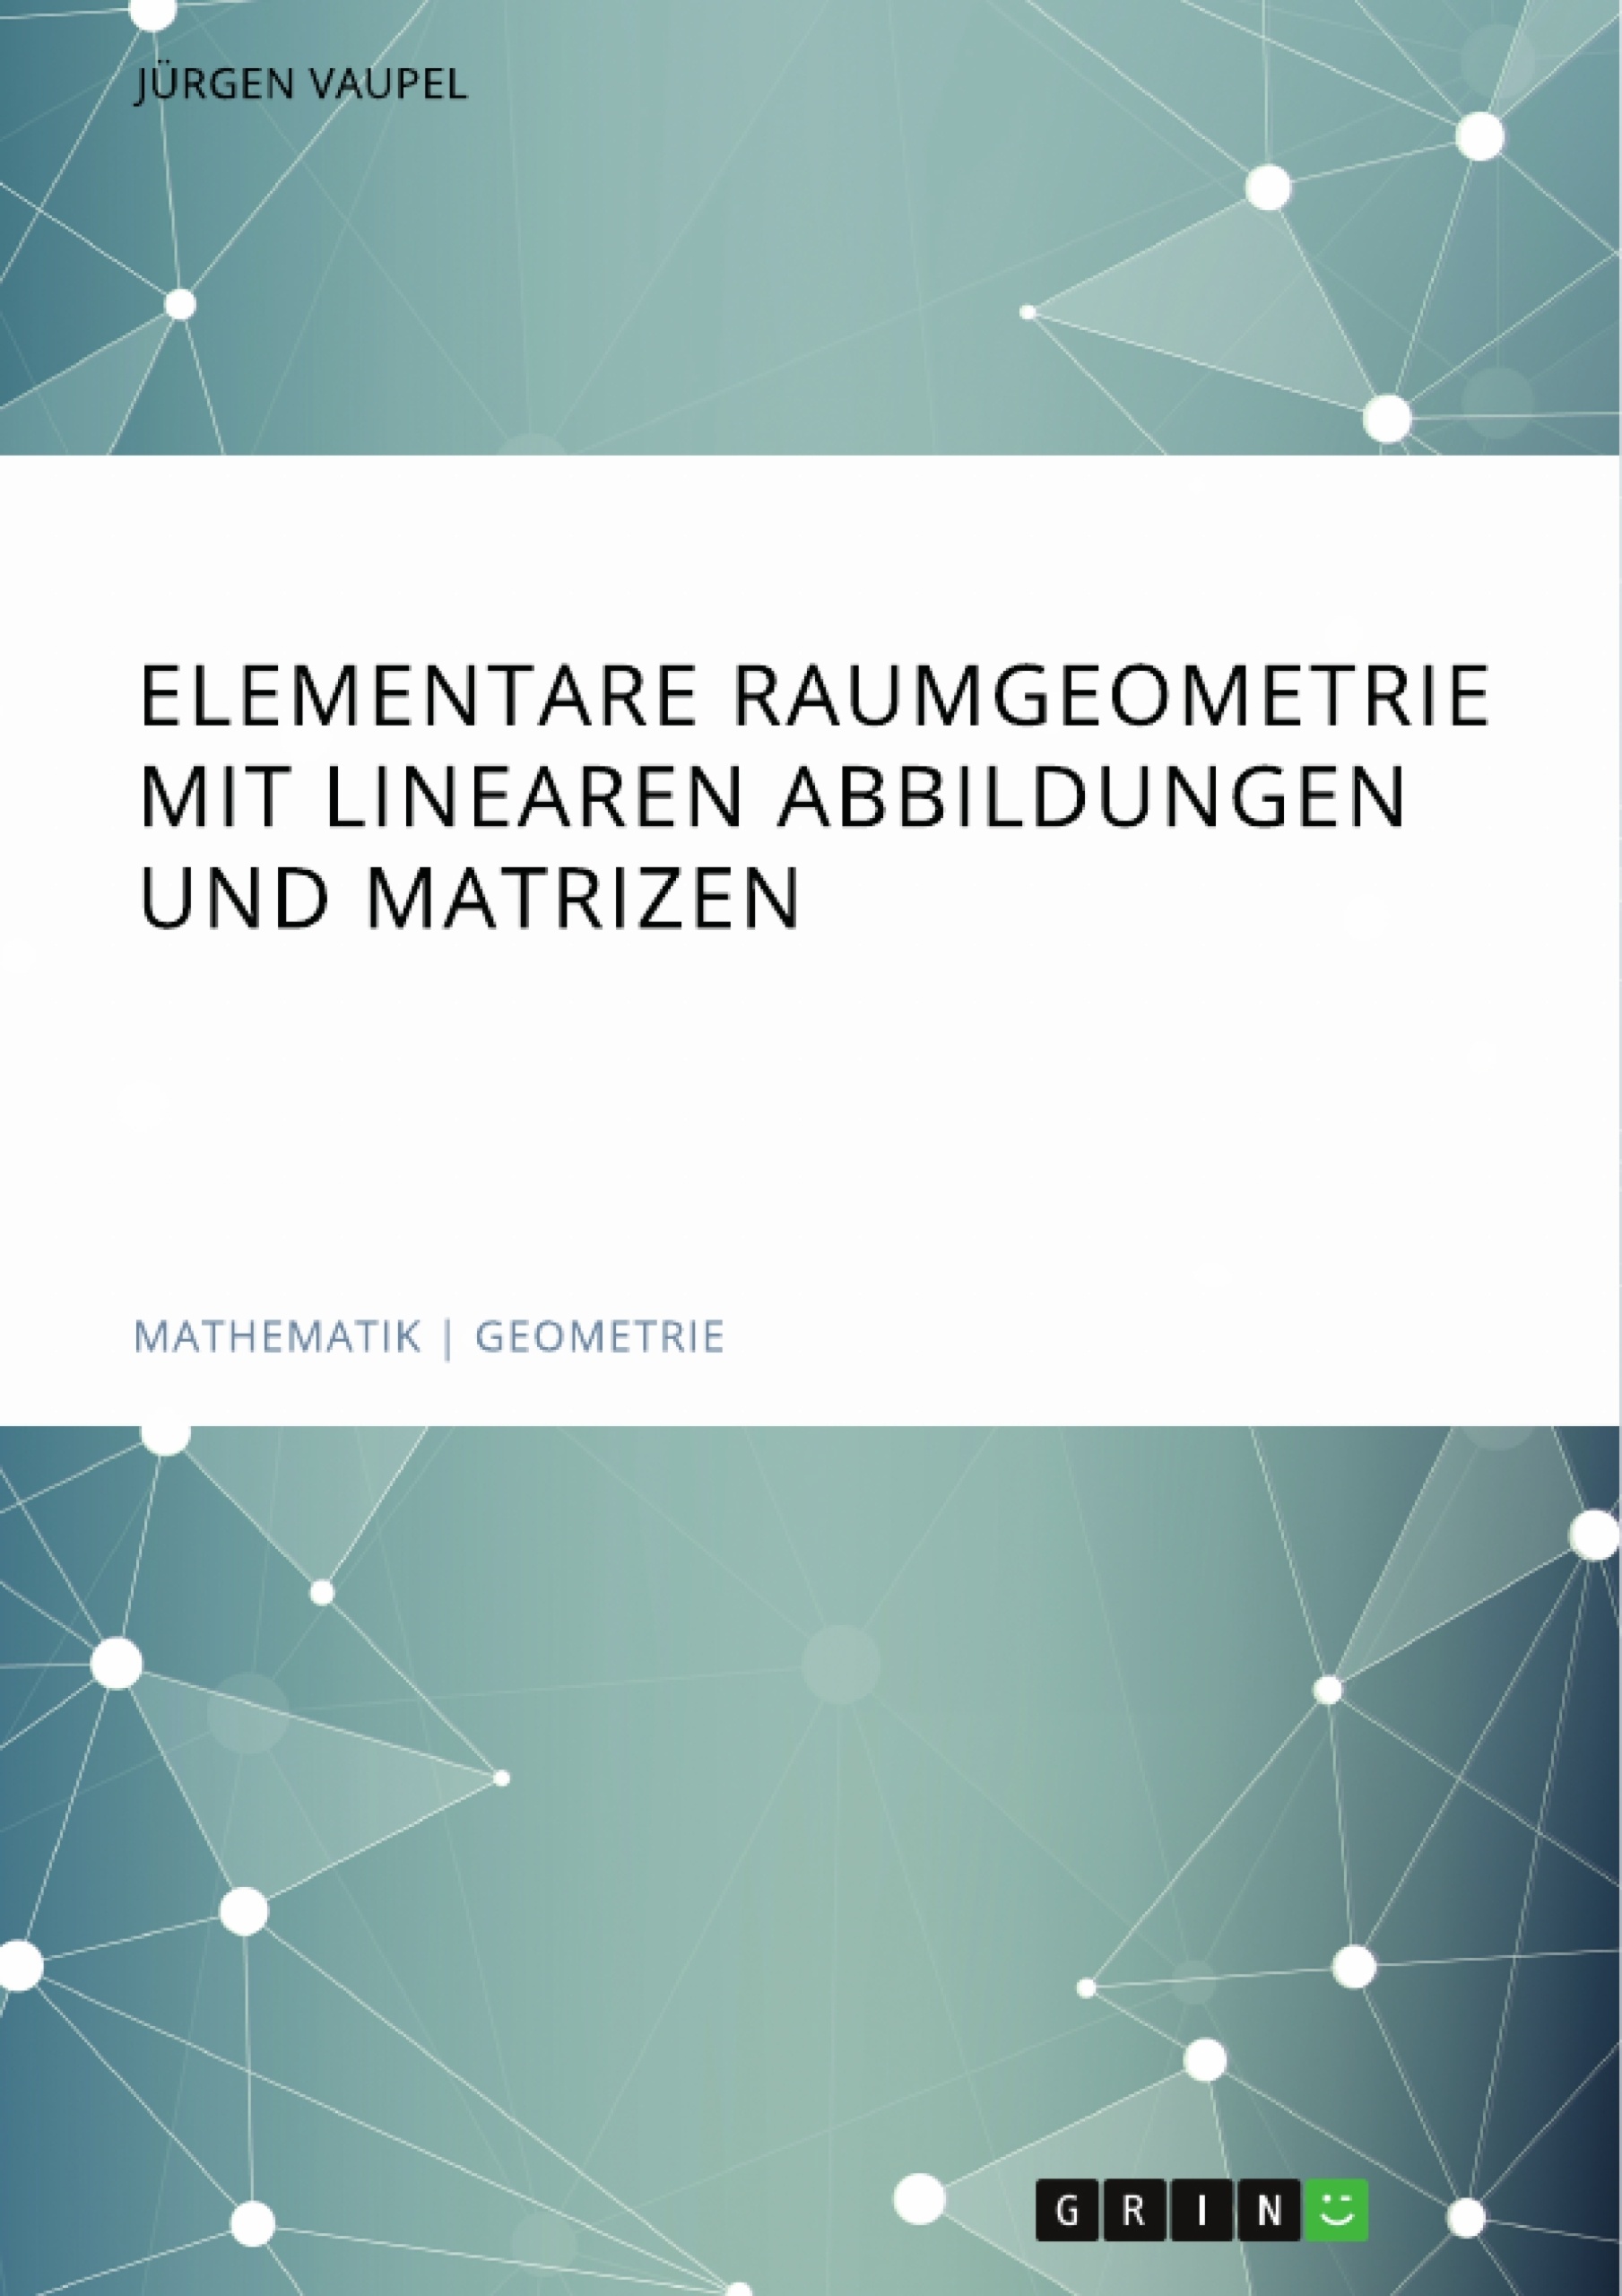 Titre: Elementare Raumgeometrie mit linearen Abbildungen und Matrizen